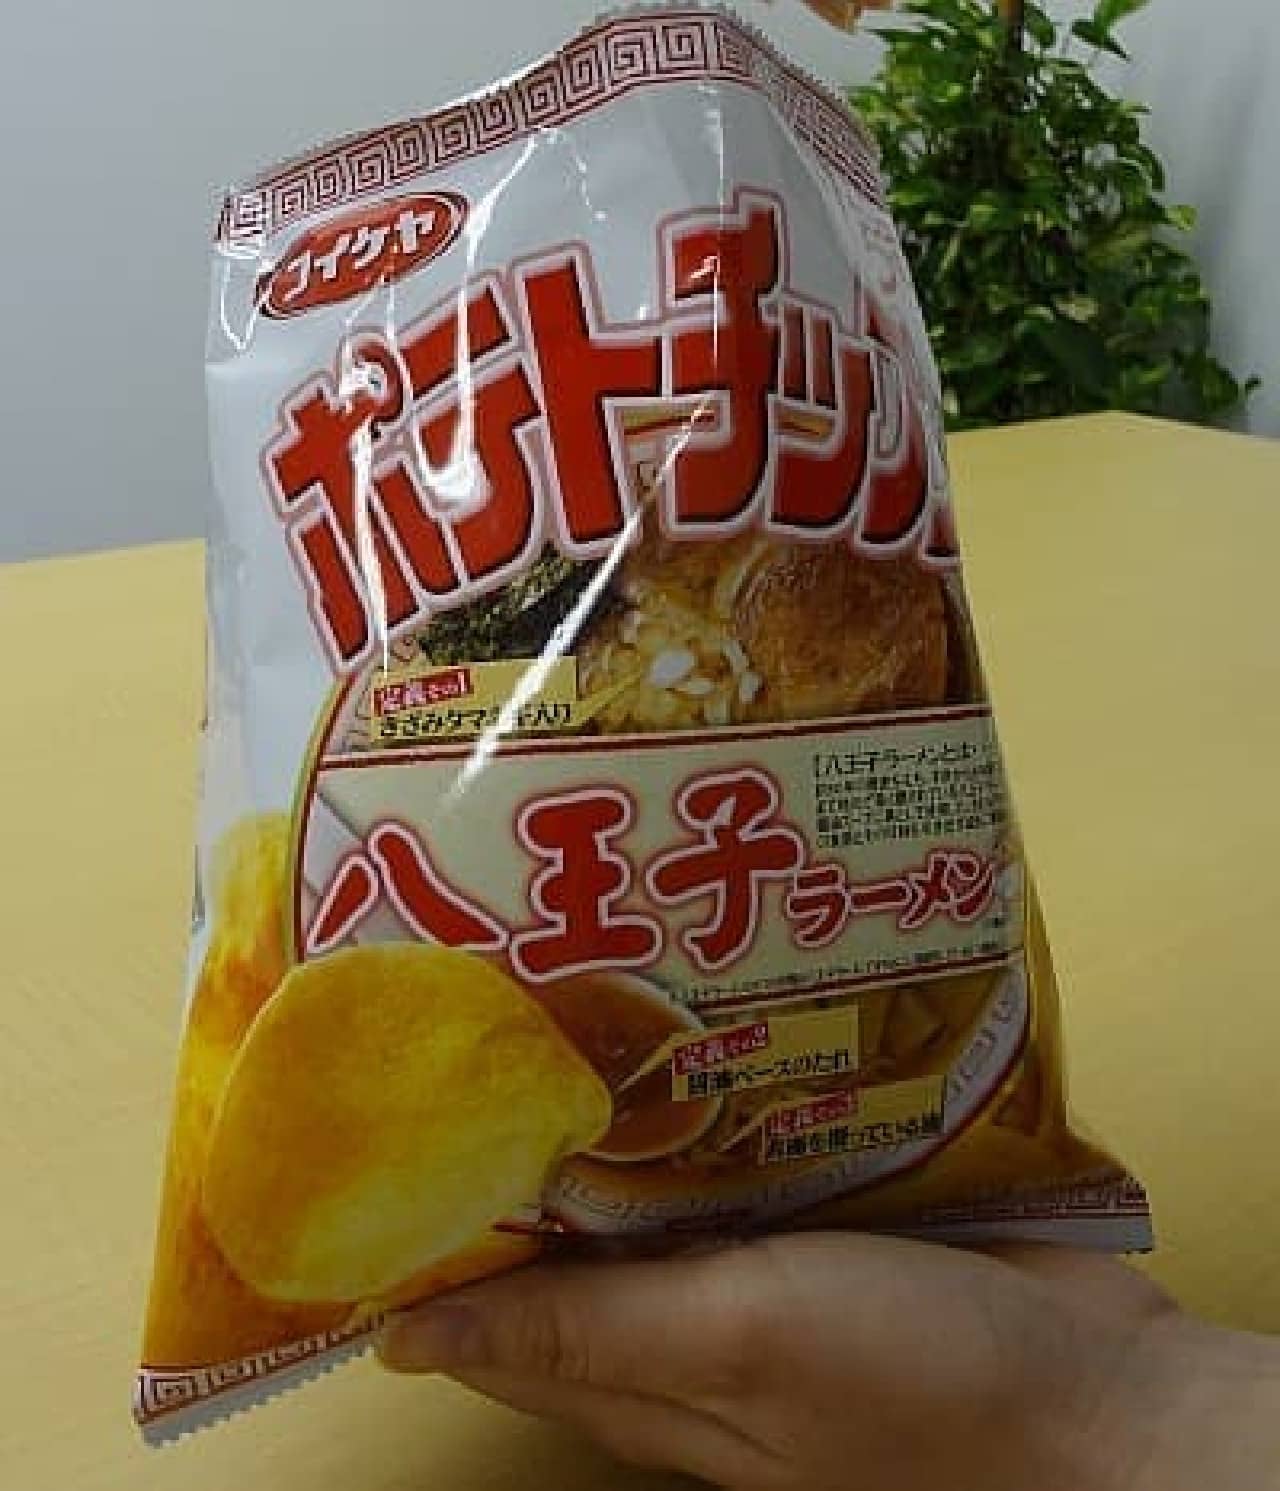 Koikeya Potato Chips "Hachioji Ramen"